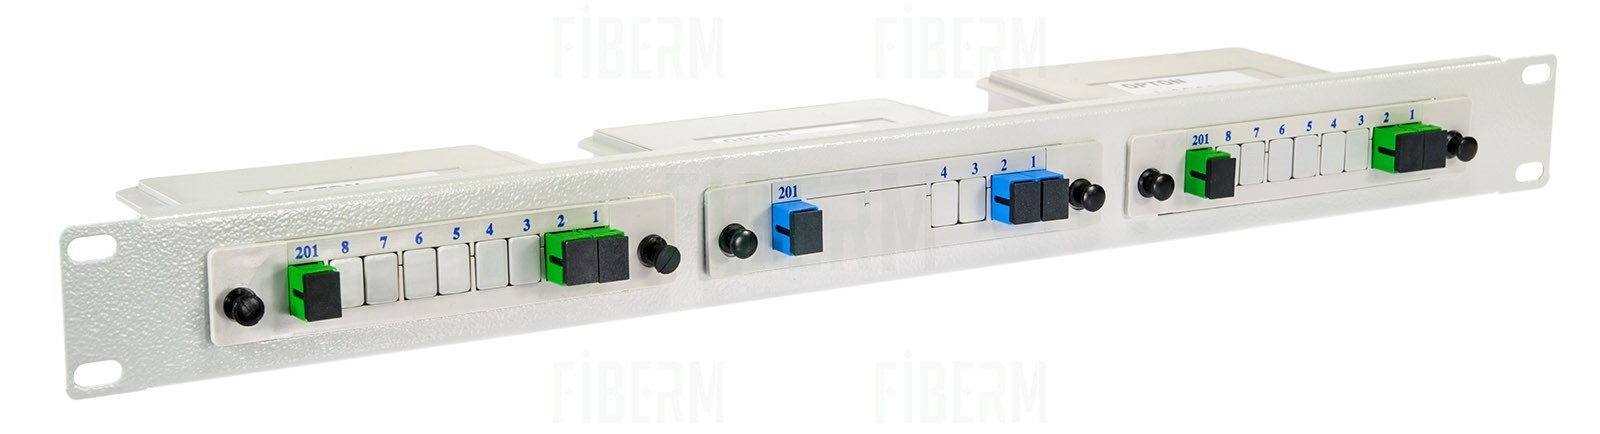 MANTAR Przełącznica światłowodowa 19`` 1,5U na 3 sztuki splitterów kasetkowych PLC